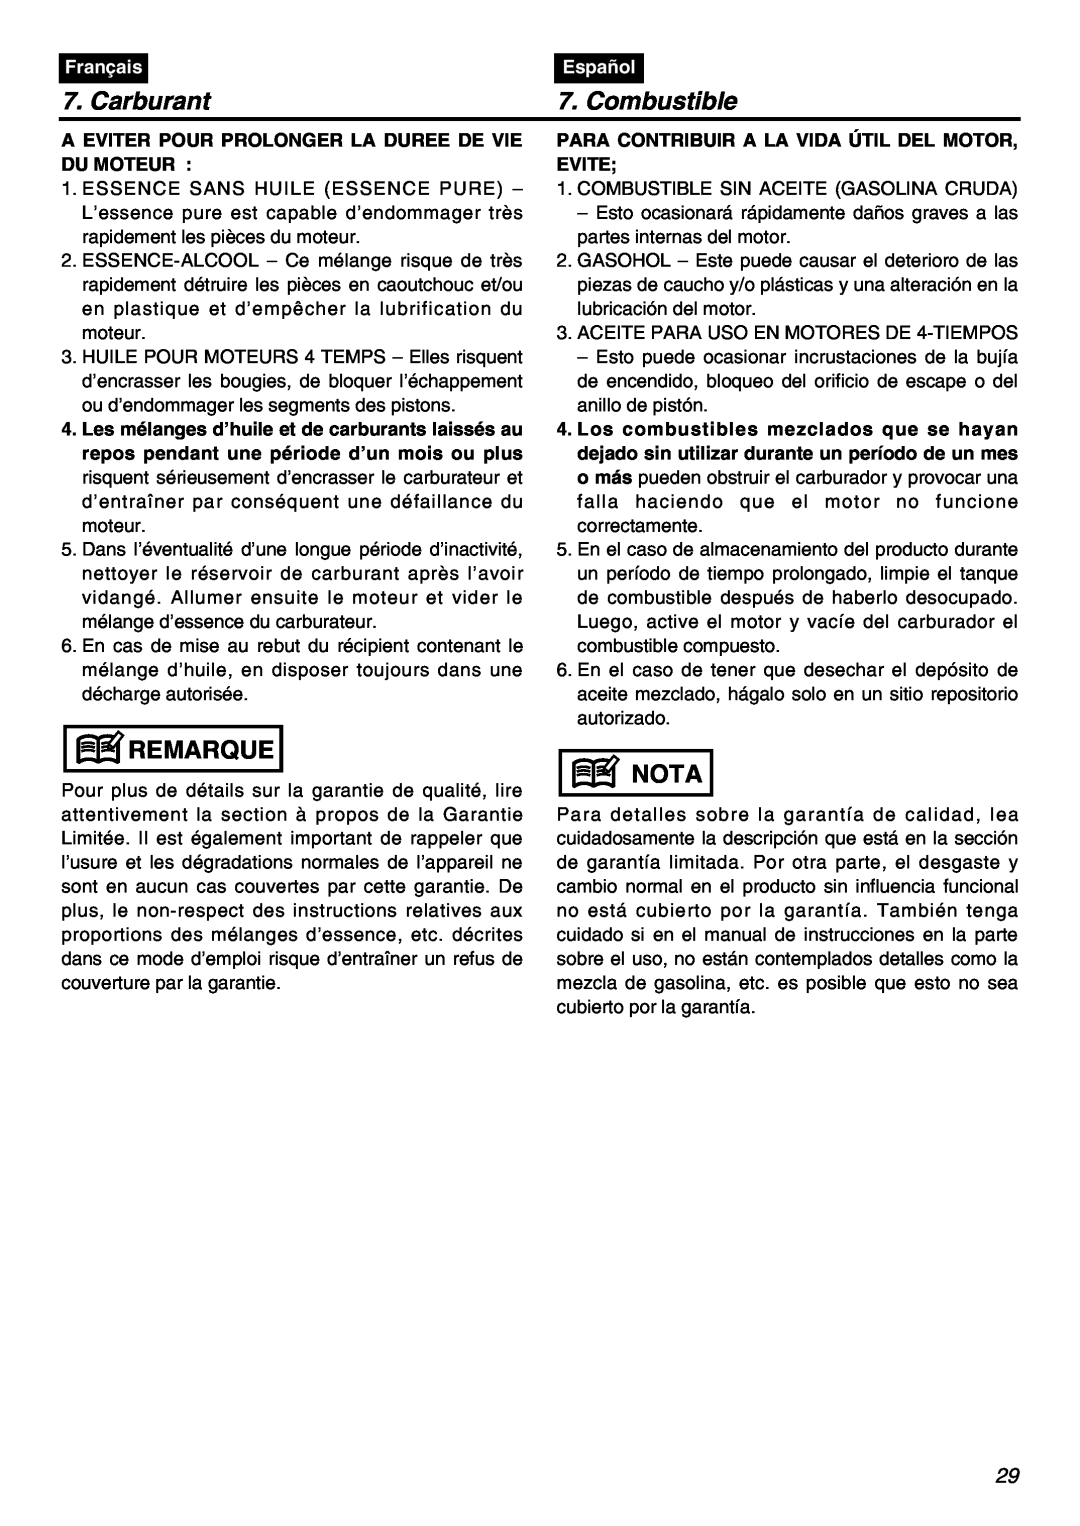 RedMax EBZ7001-CA, EBZ7001RH-CA manual Carburant, Combustible, Remarque, Nota, Français, Español 